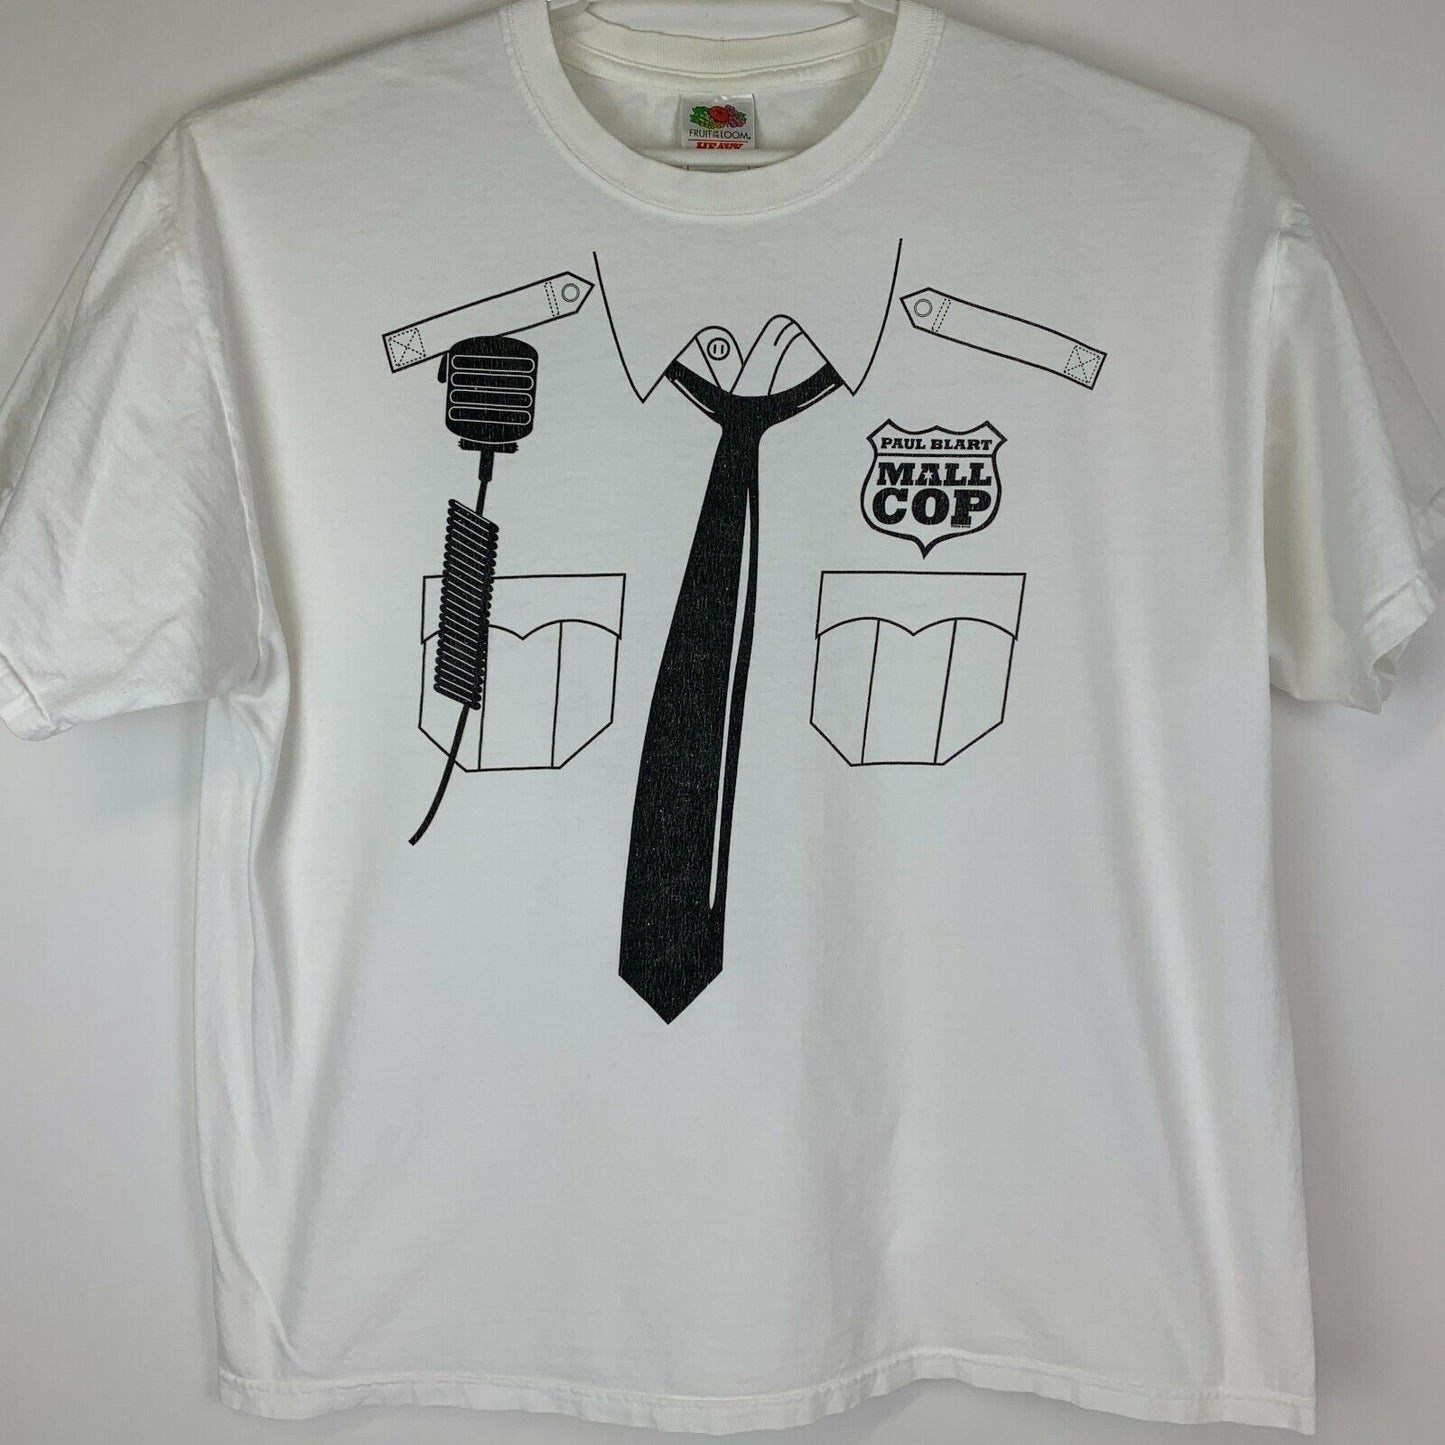 Blockbuster Video Paul Blart Mall Cop T Shirt Movie Film Promotional 2009 Tee XL